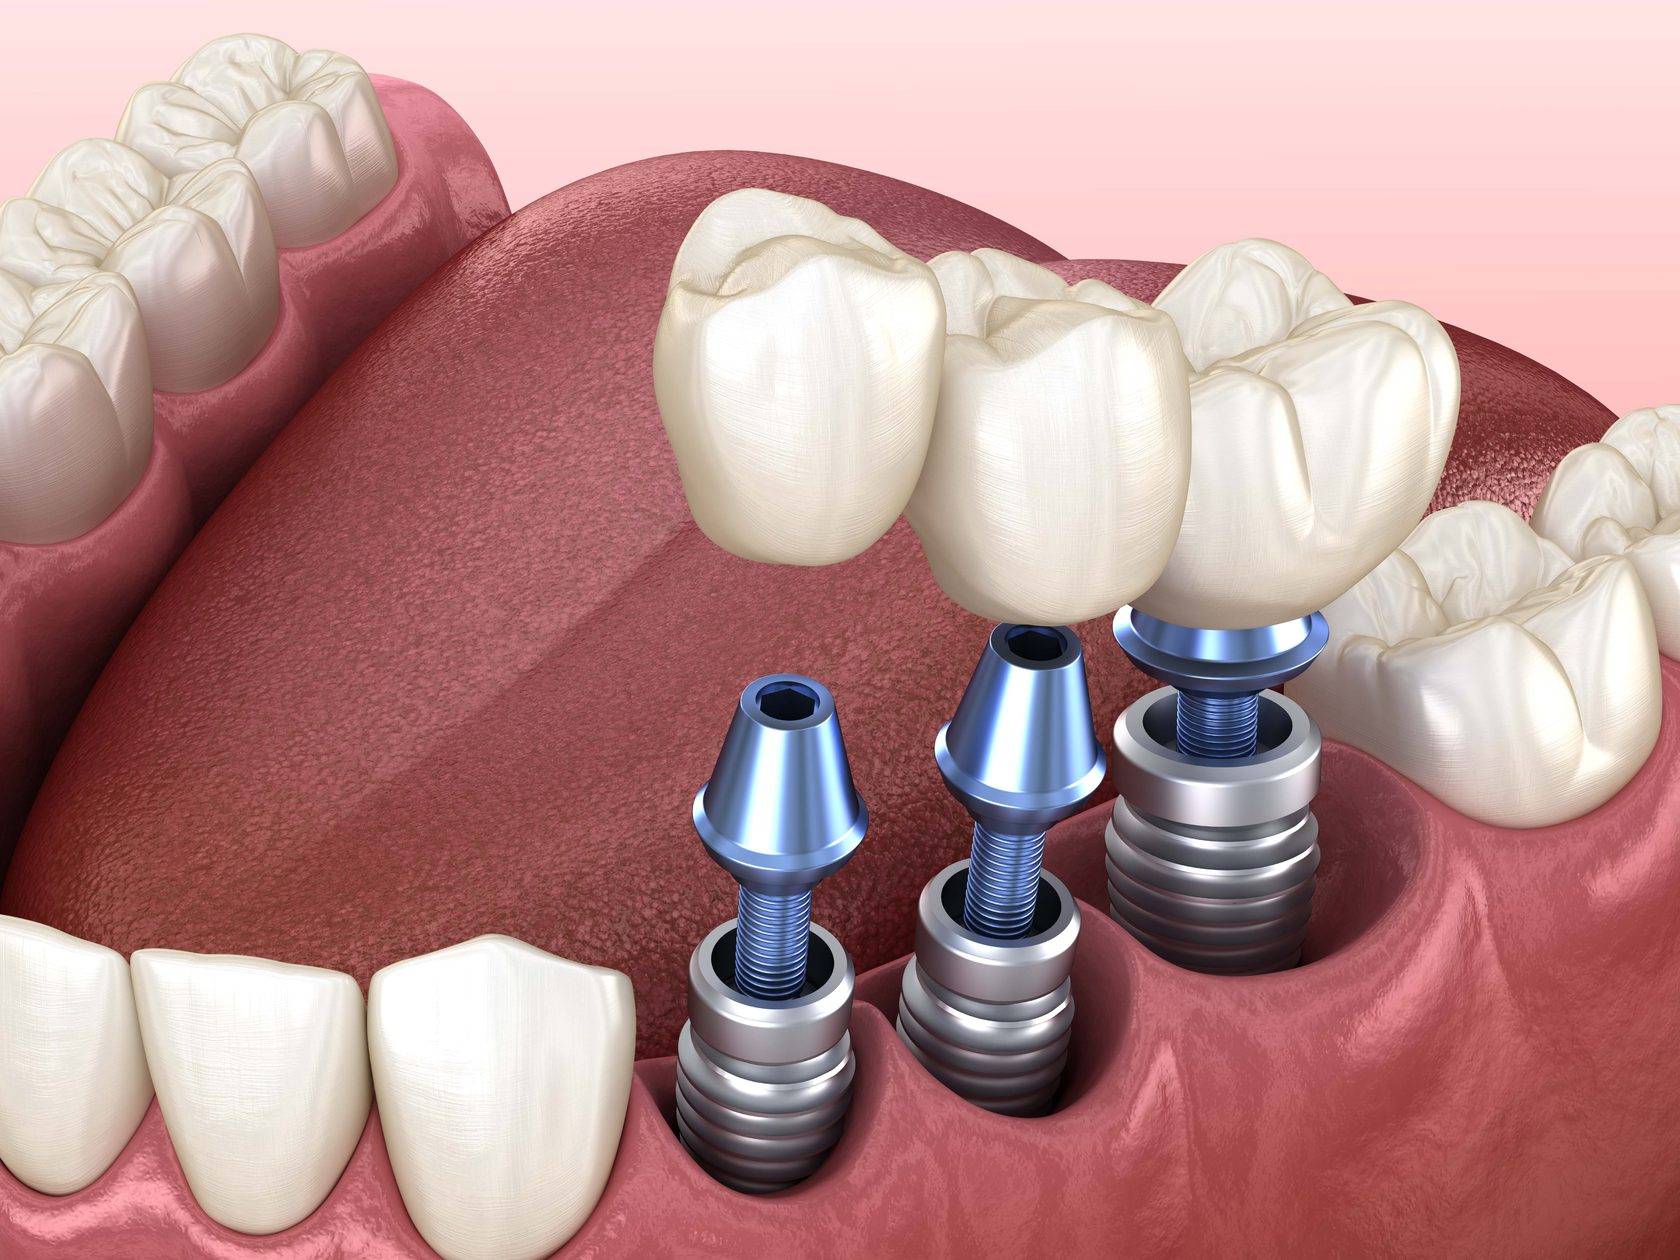 Имплантация зубов — этапы, виды, фото, как делают операцию по установке зубного импланта?